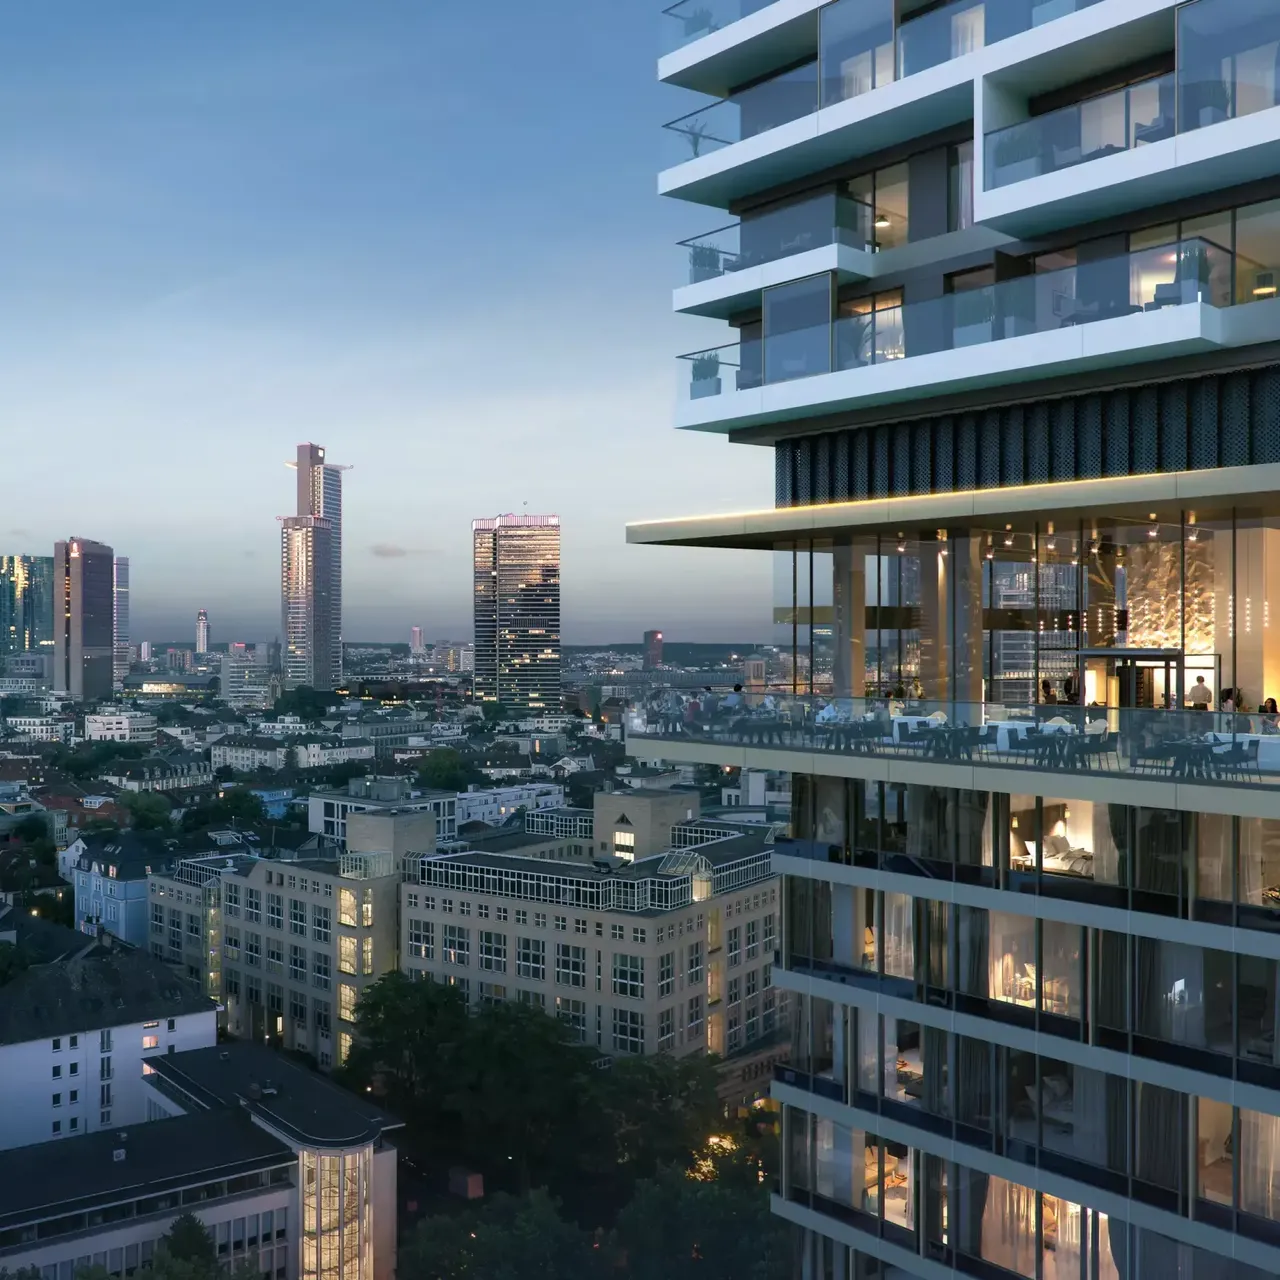 Innenansicht: Es wird die Skybar des Melia Hotels in der hausInvest Immobilie One Forty West in Frankfurt am Main abgebildet